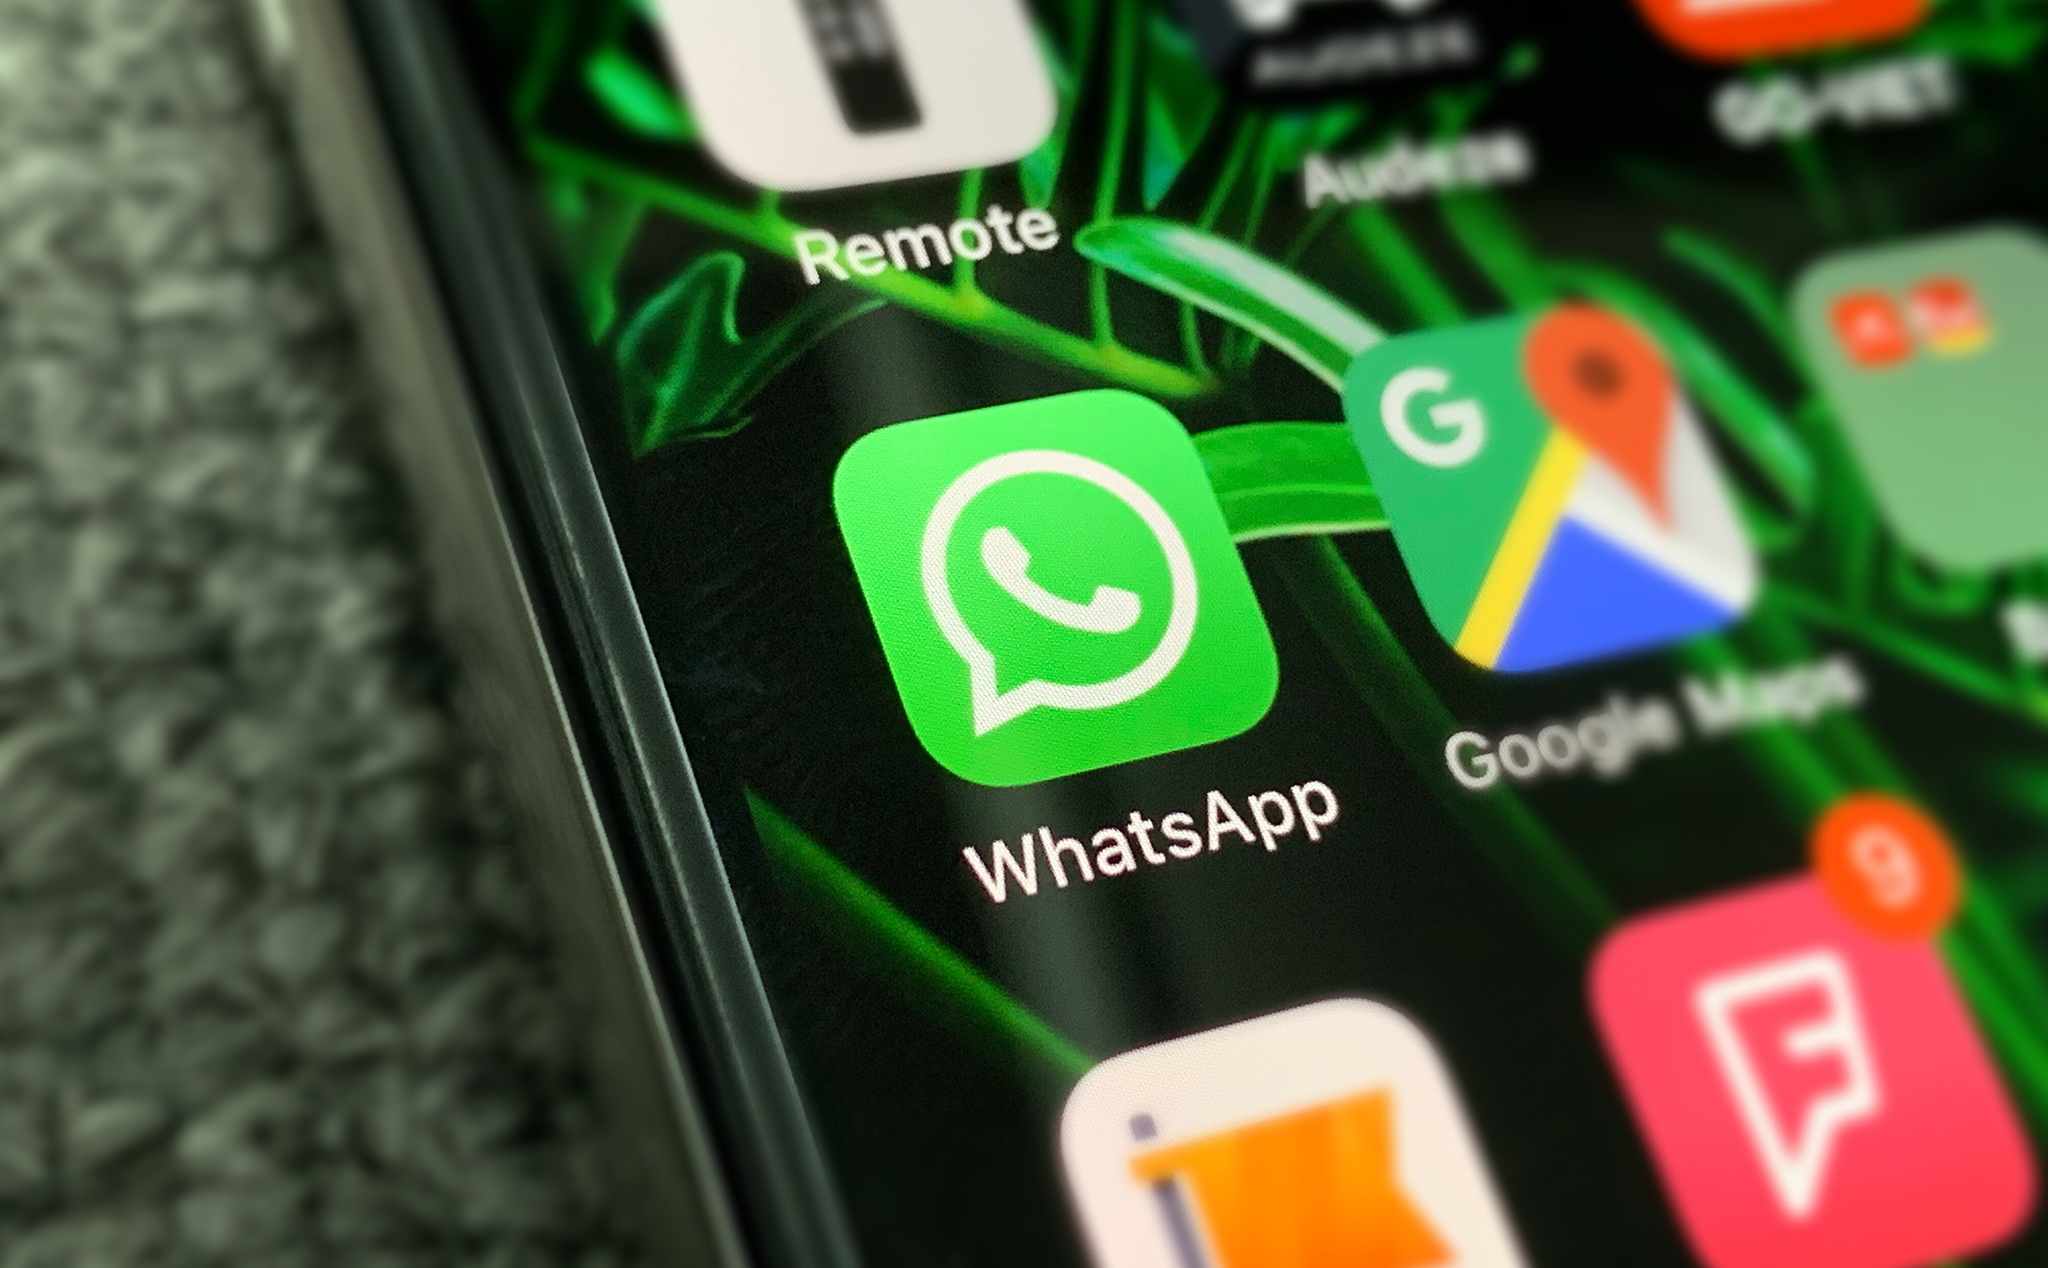 WhatsApp sắp tới sẽ ngưng hỗ trợ cho các OS cũ